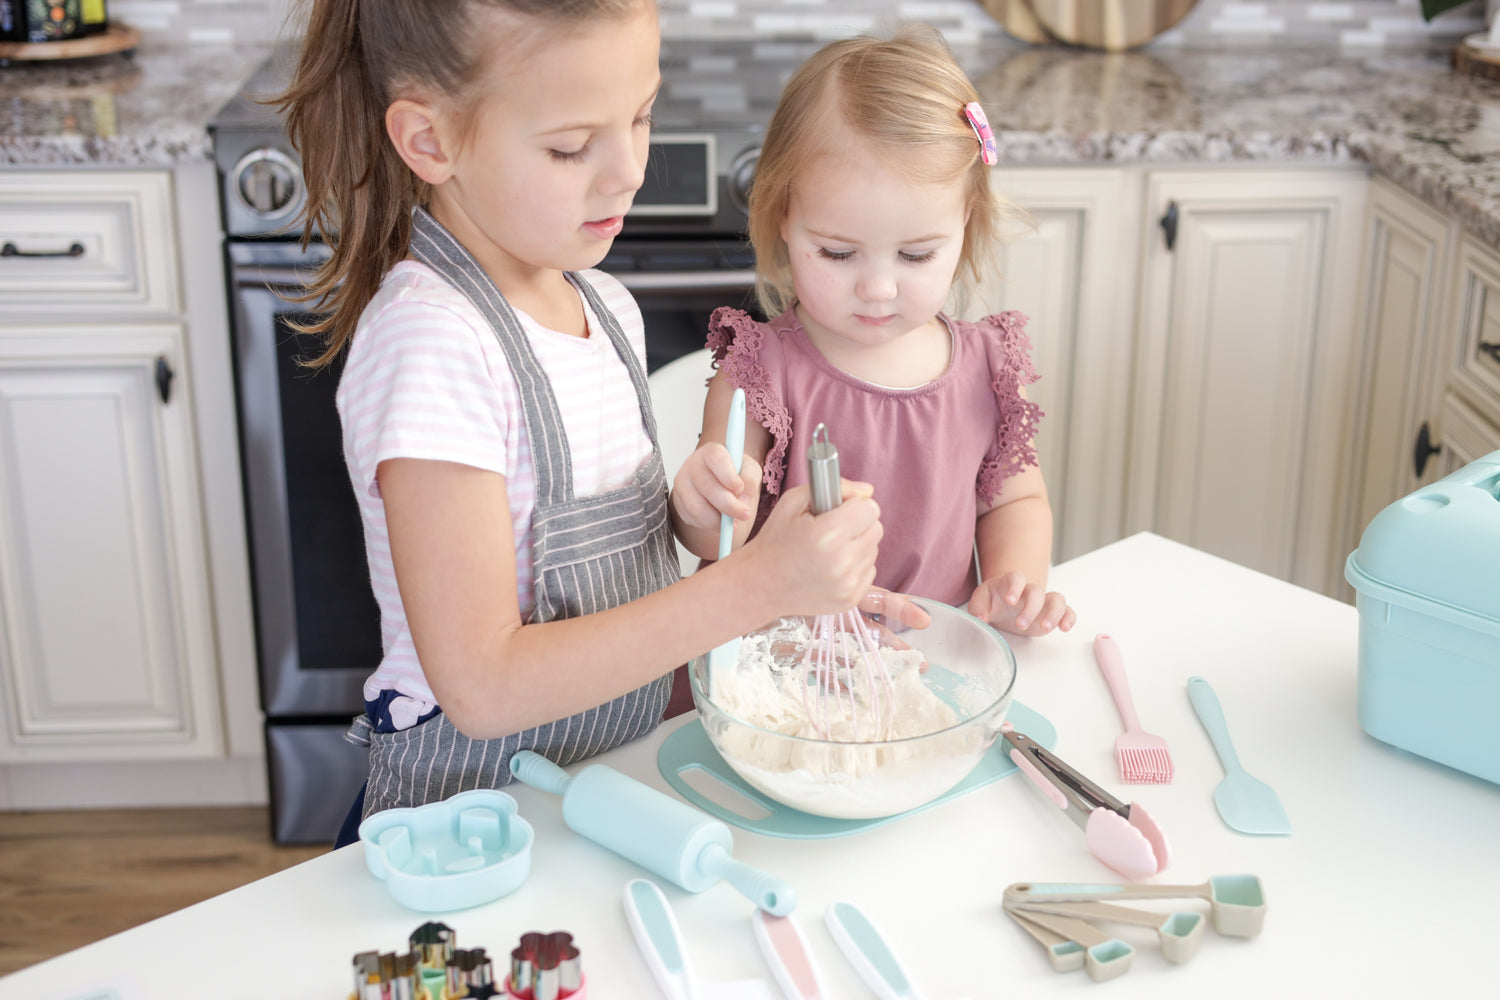 DRIRO Kids cooking and baking set Gift – DRIRO KITCHEN UTENSILS